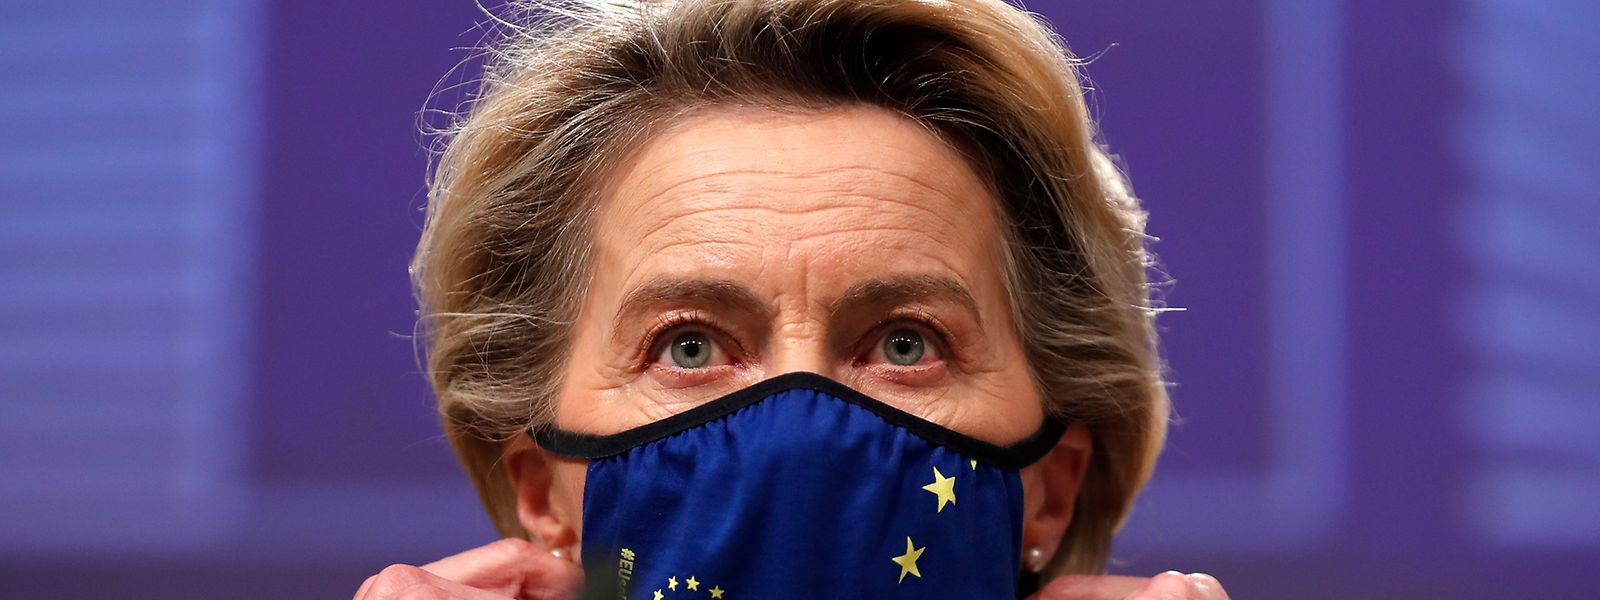 EU-Kommissionschefin Ursula von der Leyen wirkte angesichts der nationalen Alleingänge der EU-Mitgliedsstaaten 2020 ziemlich hilflos.